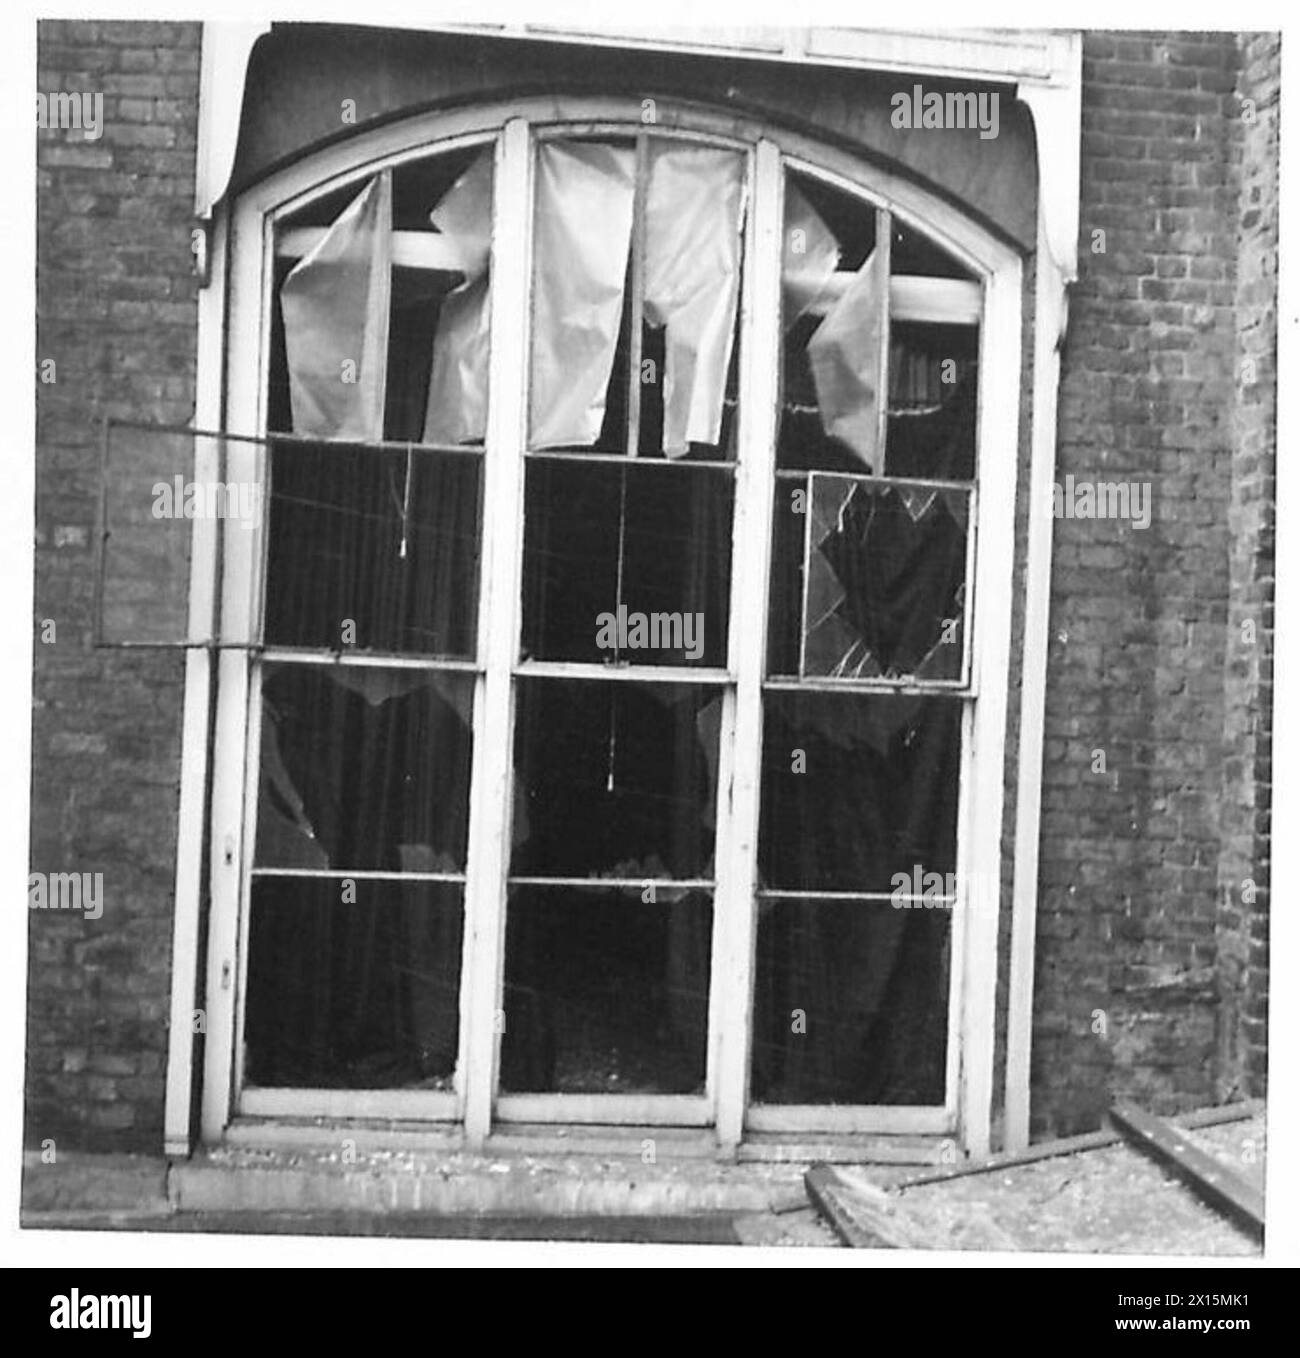 NO.10 DOWNING STREET WURDE WÄHREND DES RAID BESCHÄDIGT - die kaputten Fenster der Nummern 10 und 11 [Rückseite der Häuser] British Army Stockfoto